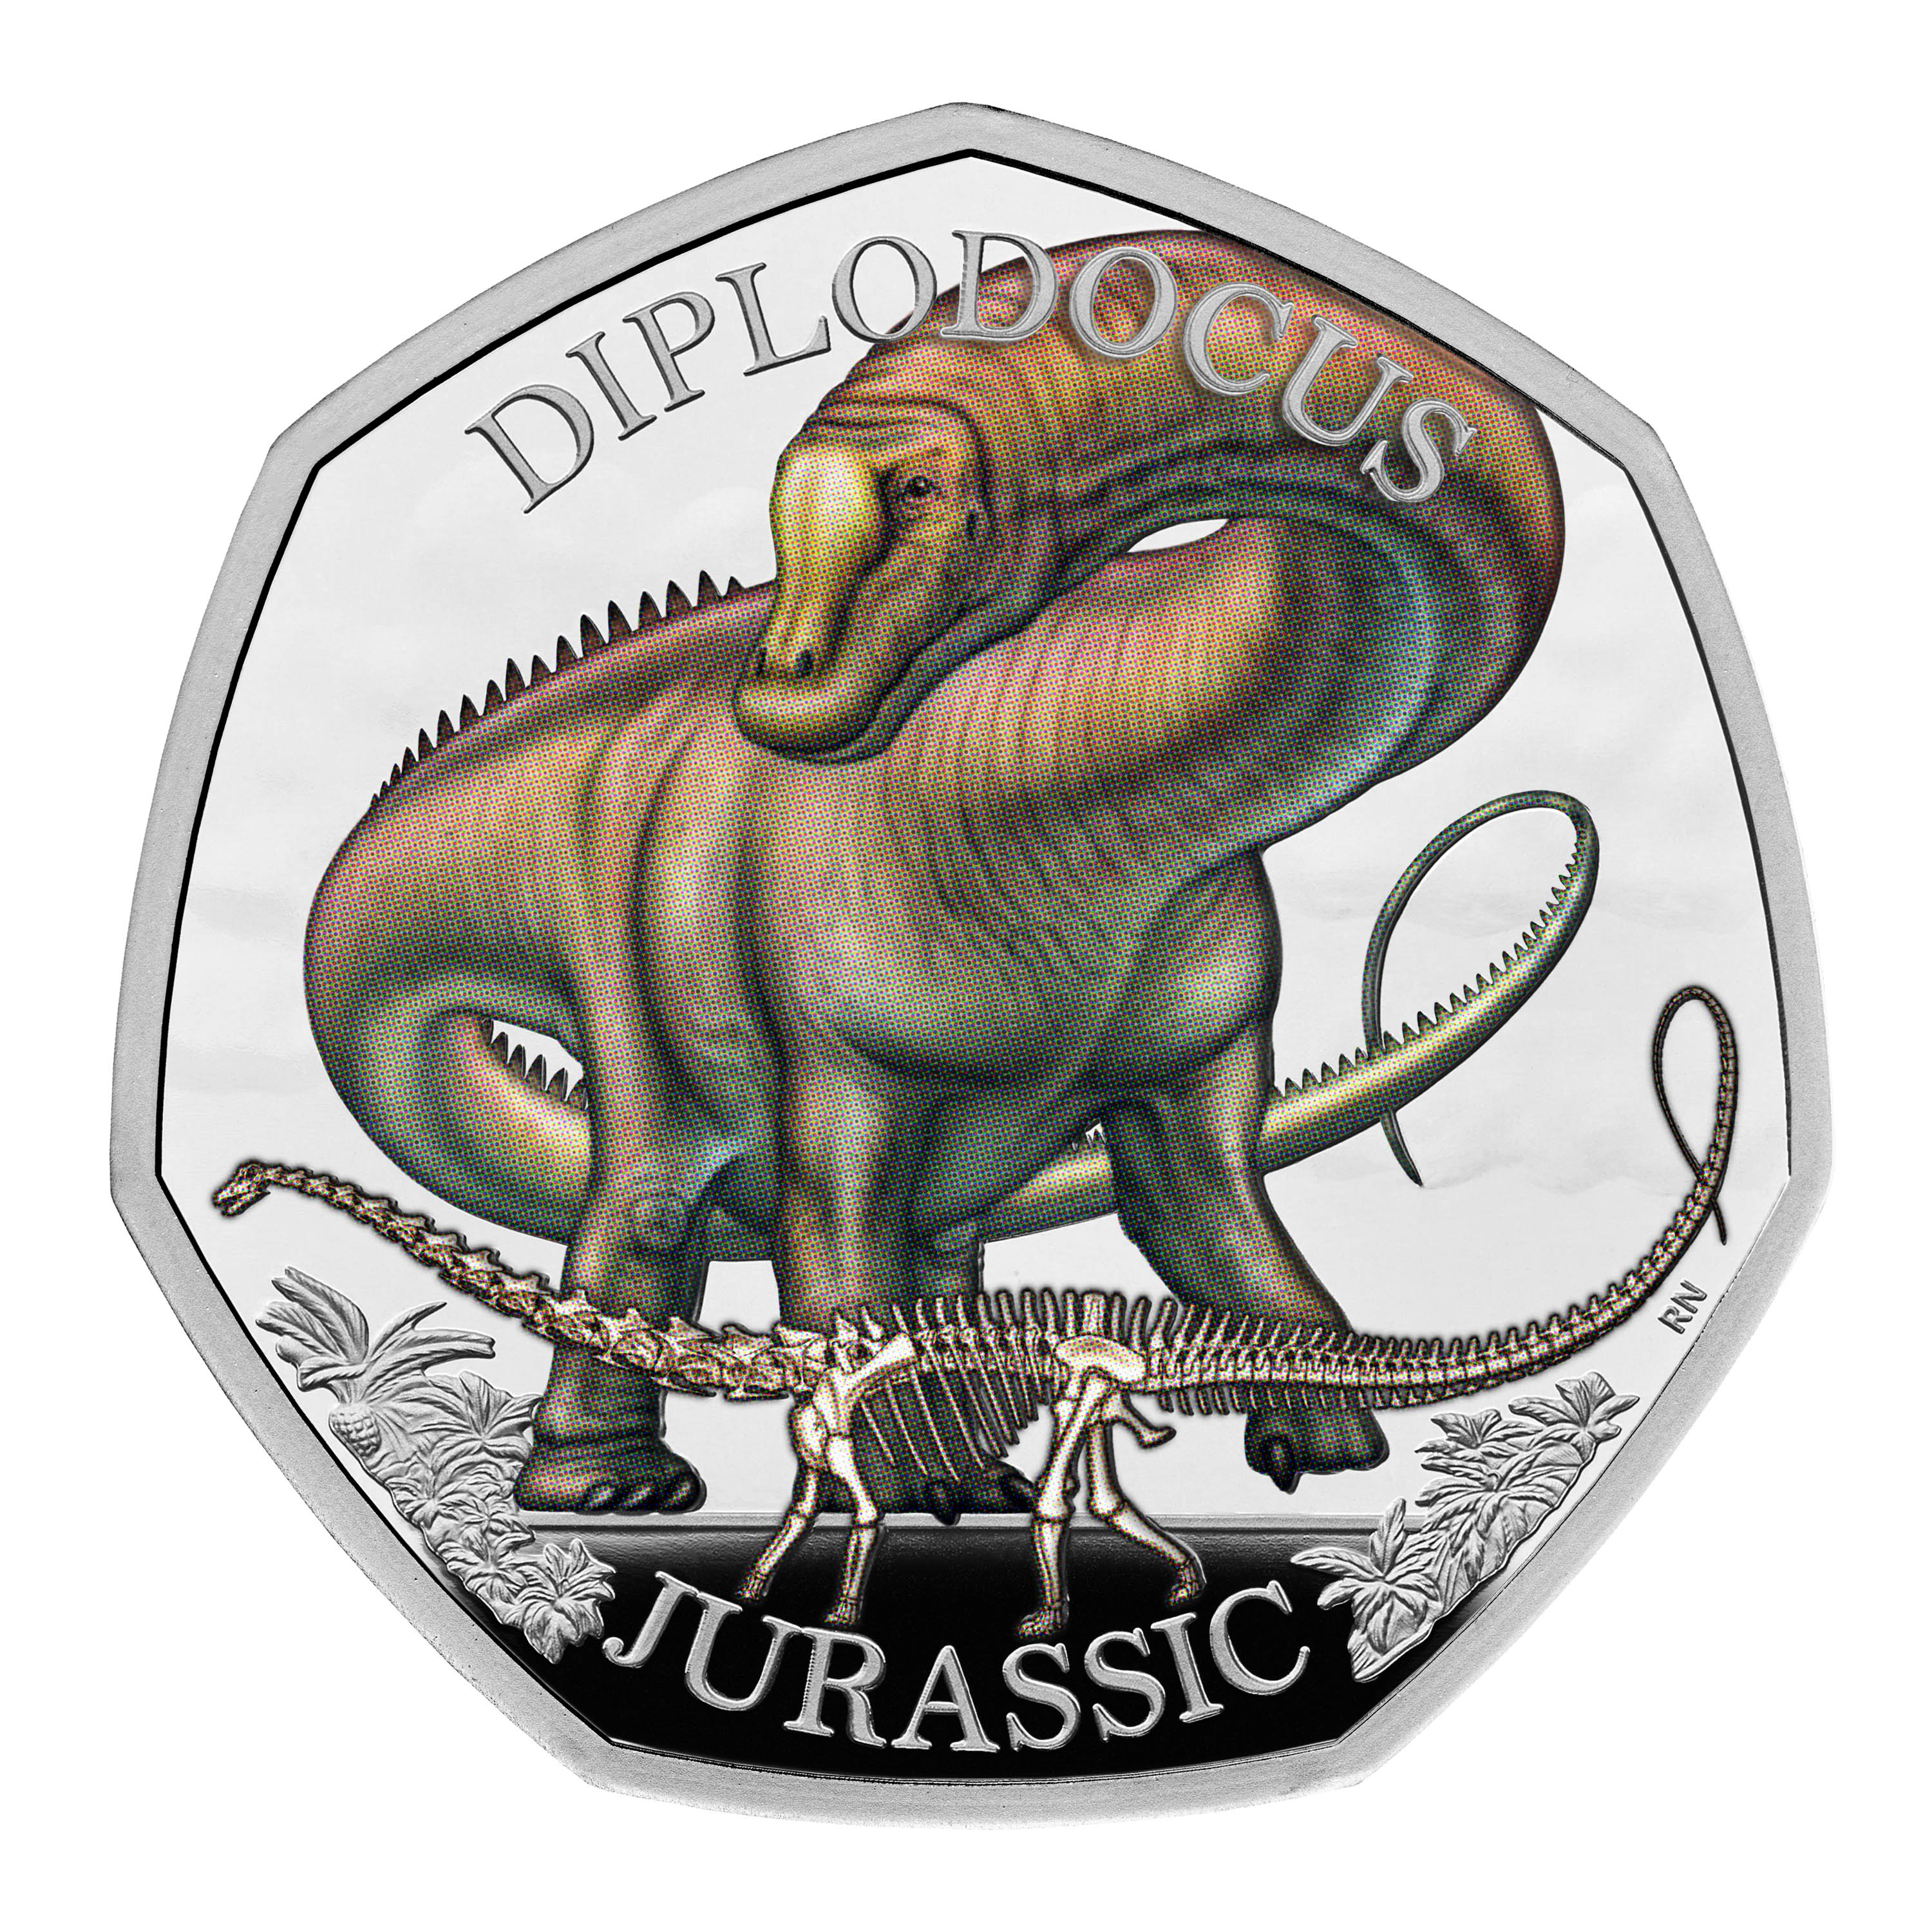 Das Set, zu dem auch der Diplodocus gehörte, wurde vom Künstler Robert Nicholls entworfen